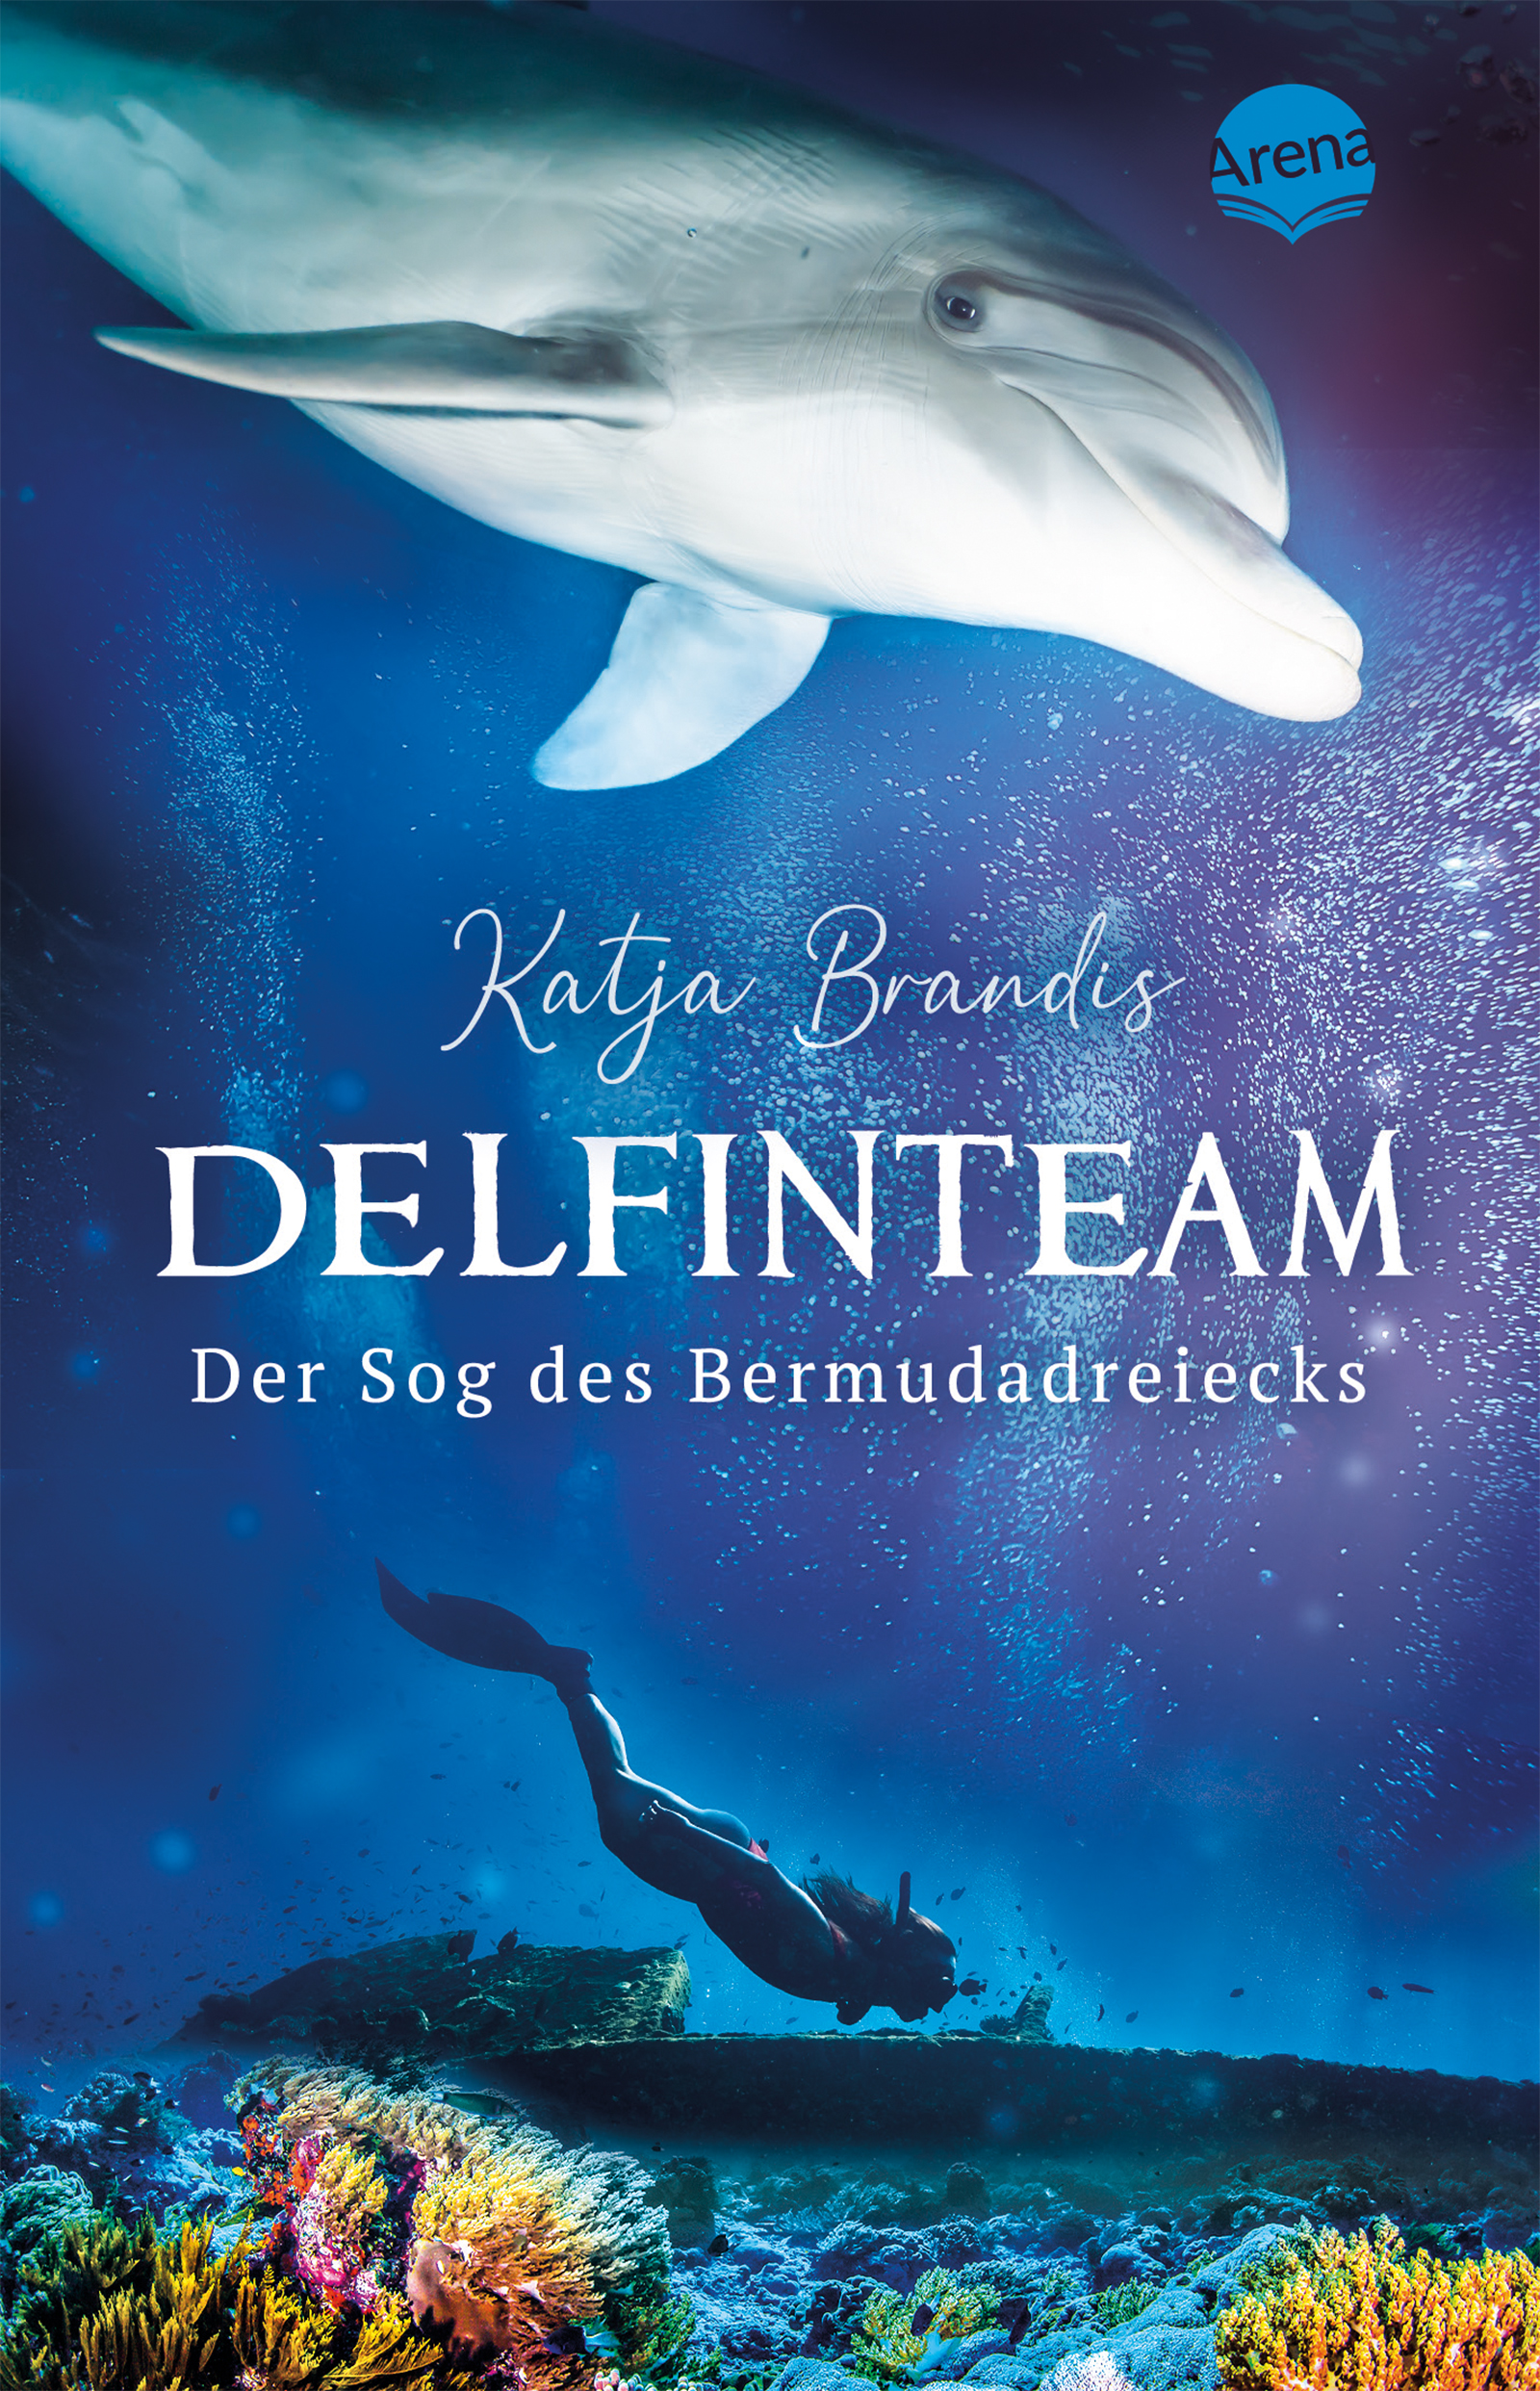 Katja BrandisDelfinteam – Der Sog des Bermudadreiecks (Band 2)